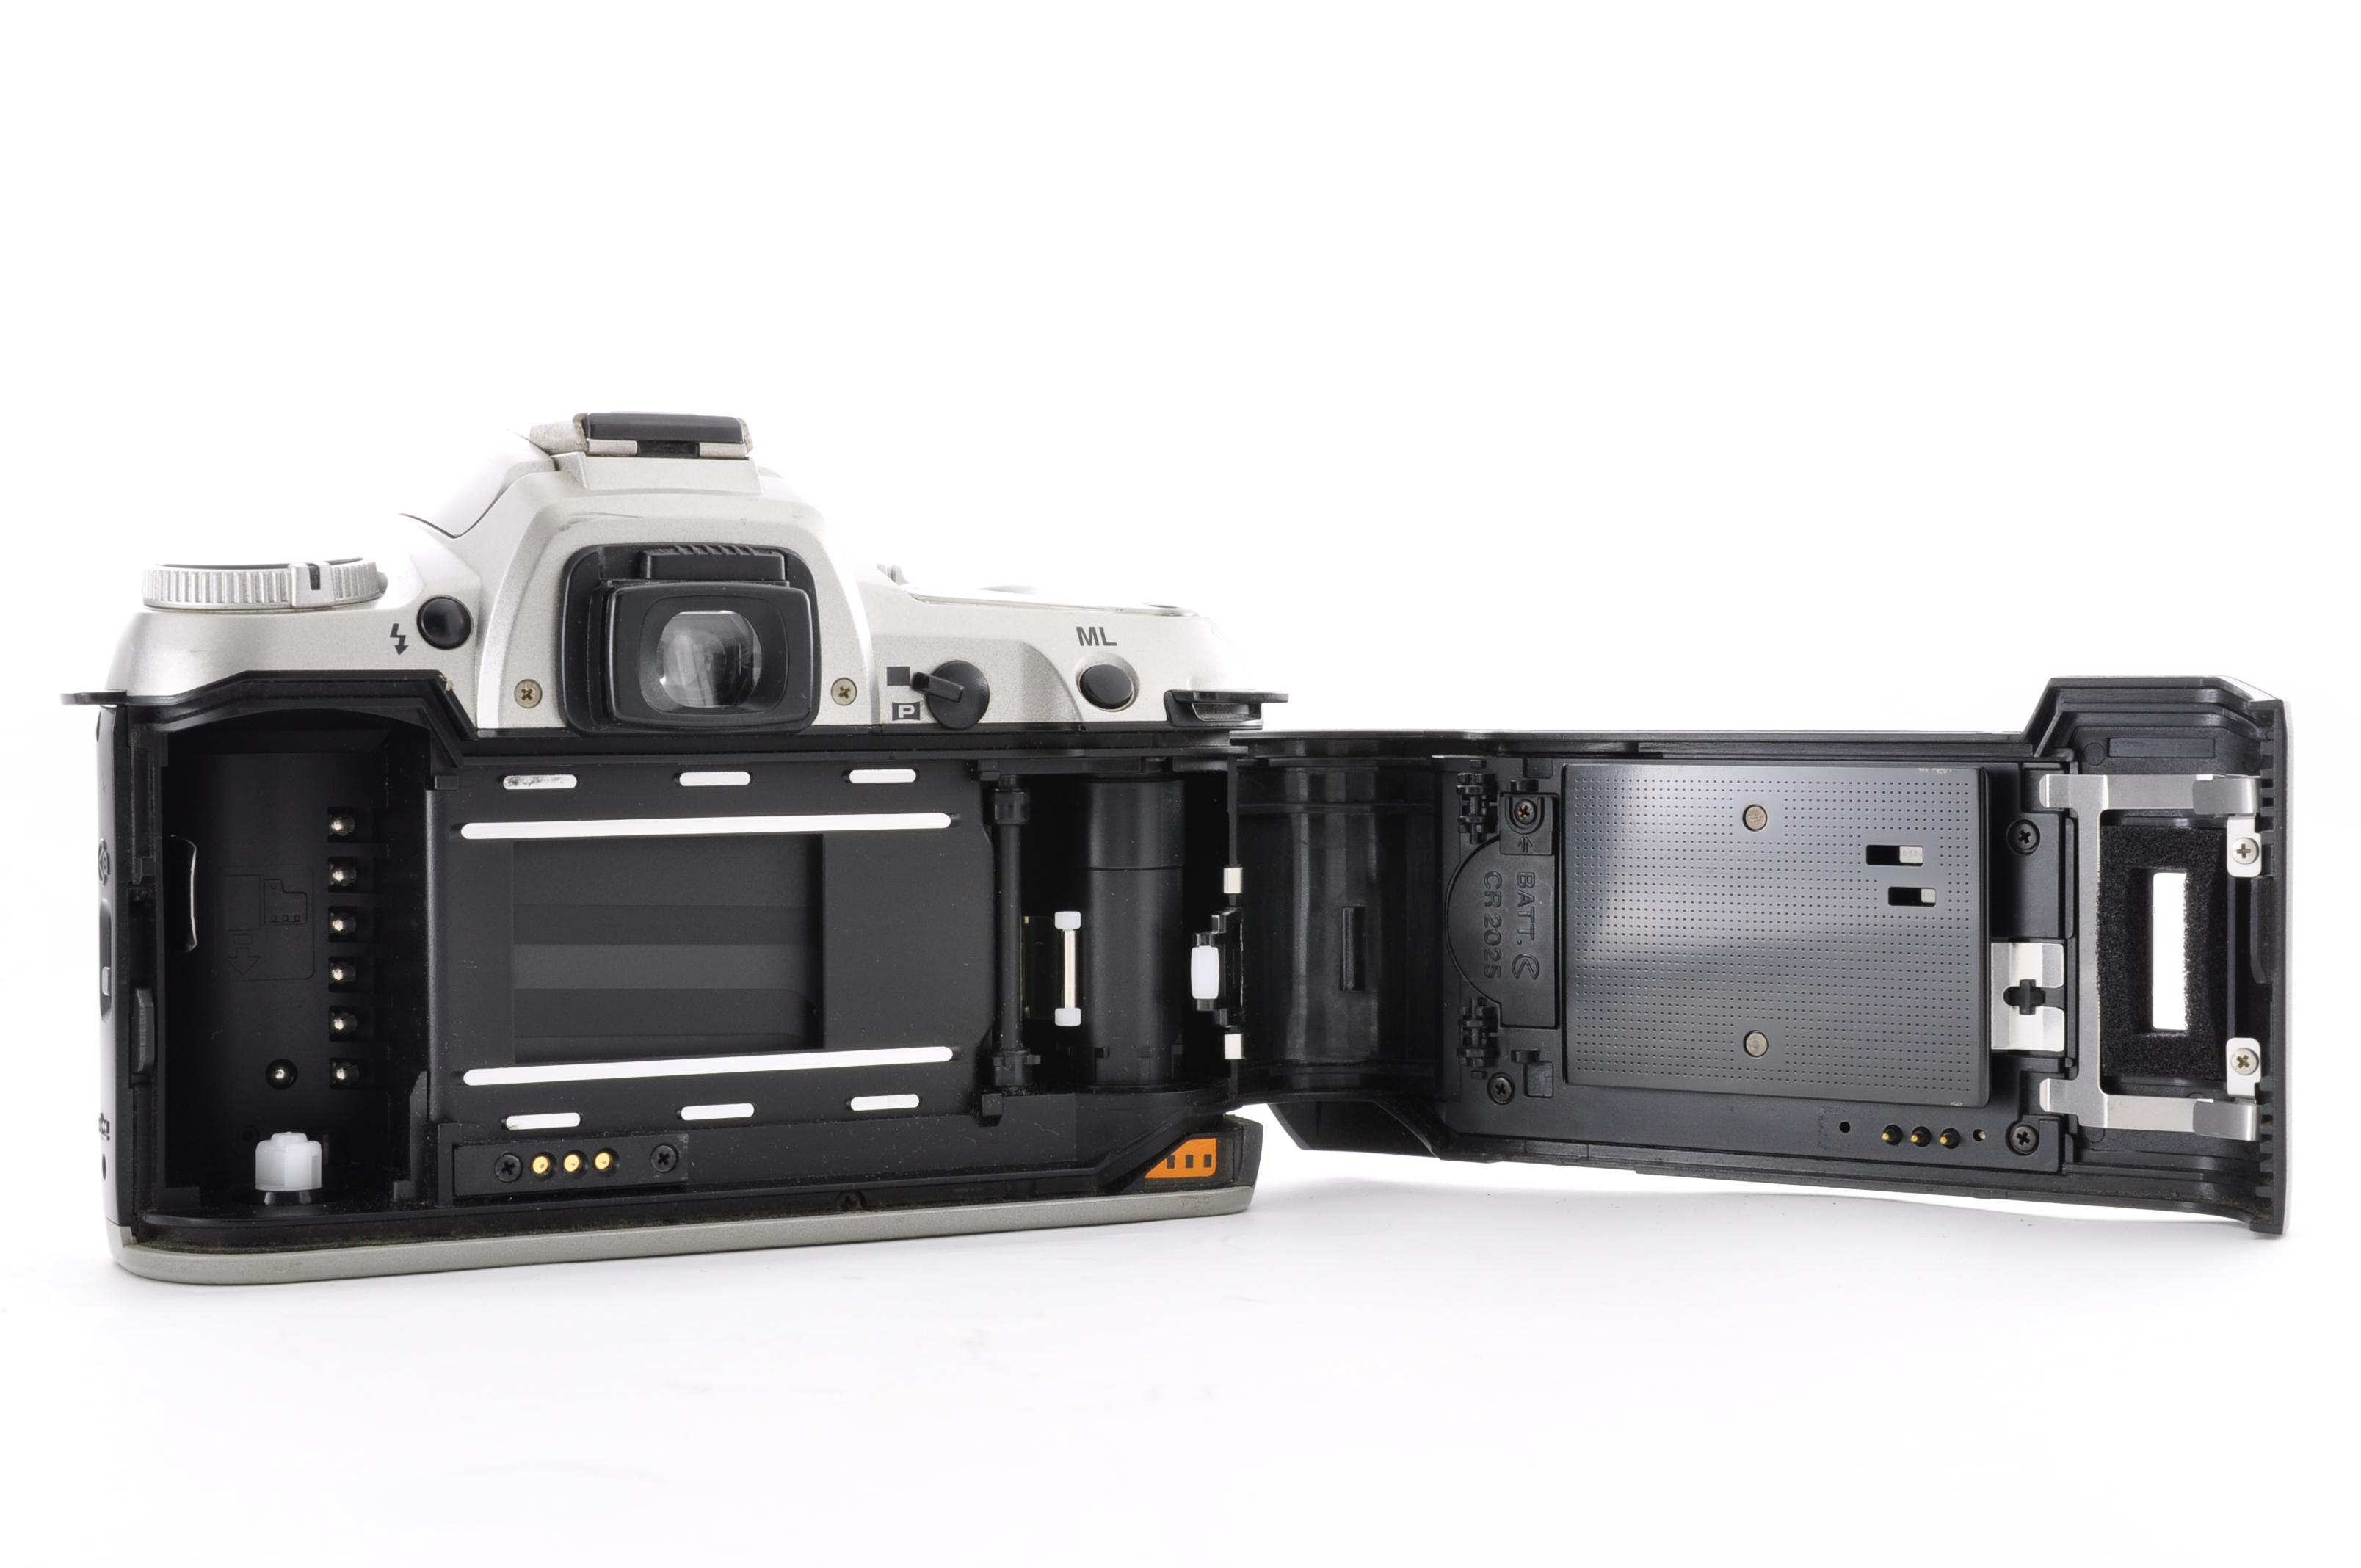 PENTAX MZ-7 35mm Film Camera [Near Mint] + Tamron 28-200mm F3.5-5.6 From Japan img14